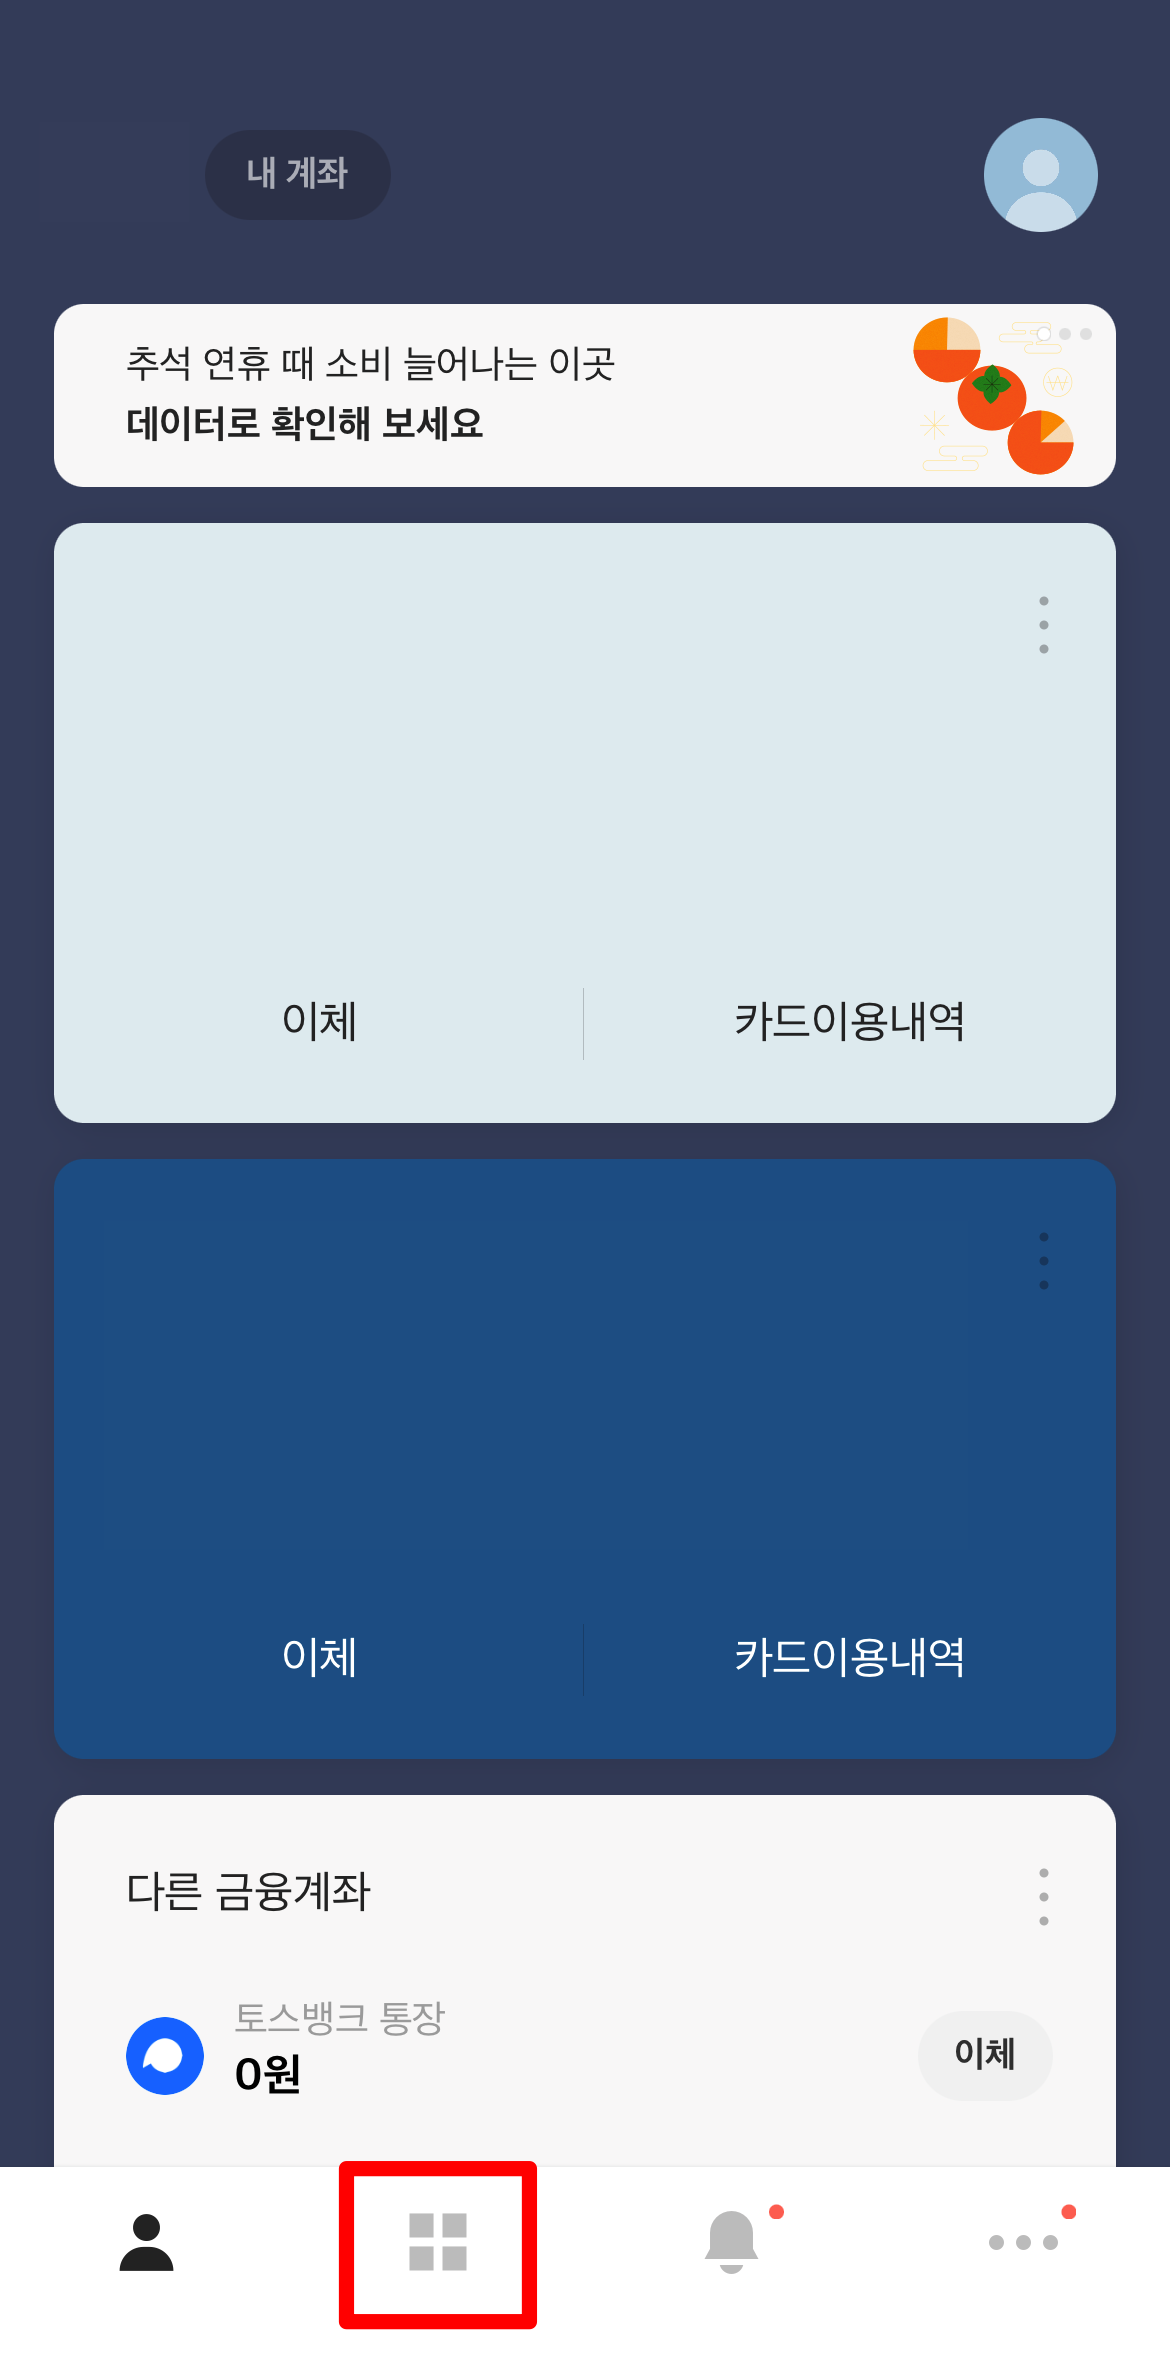 카카오뱅크 앱에서 상품 및 서비스 메뉴 접속